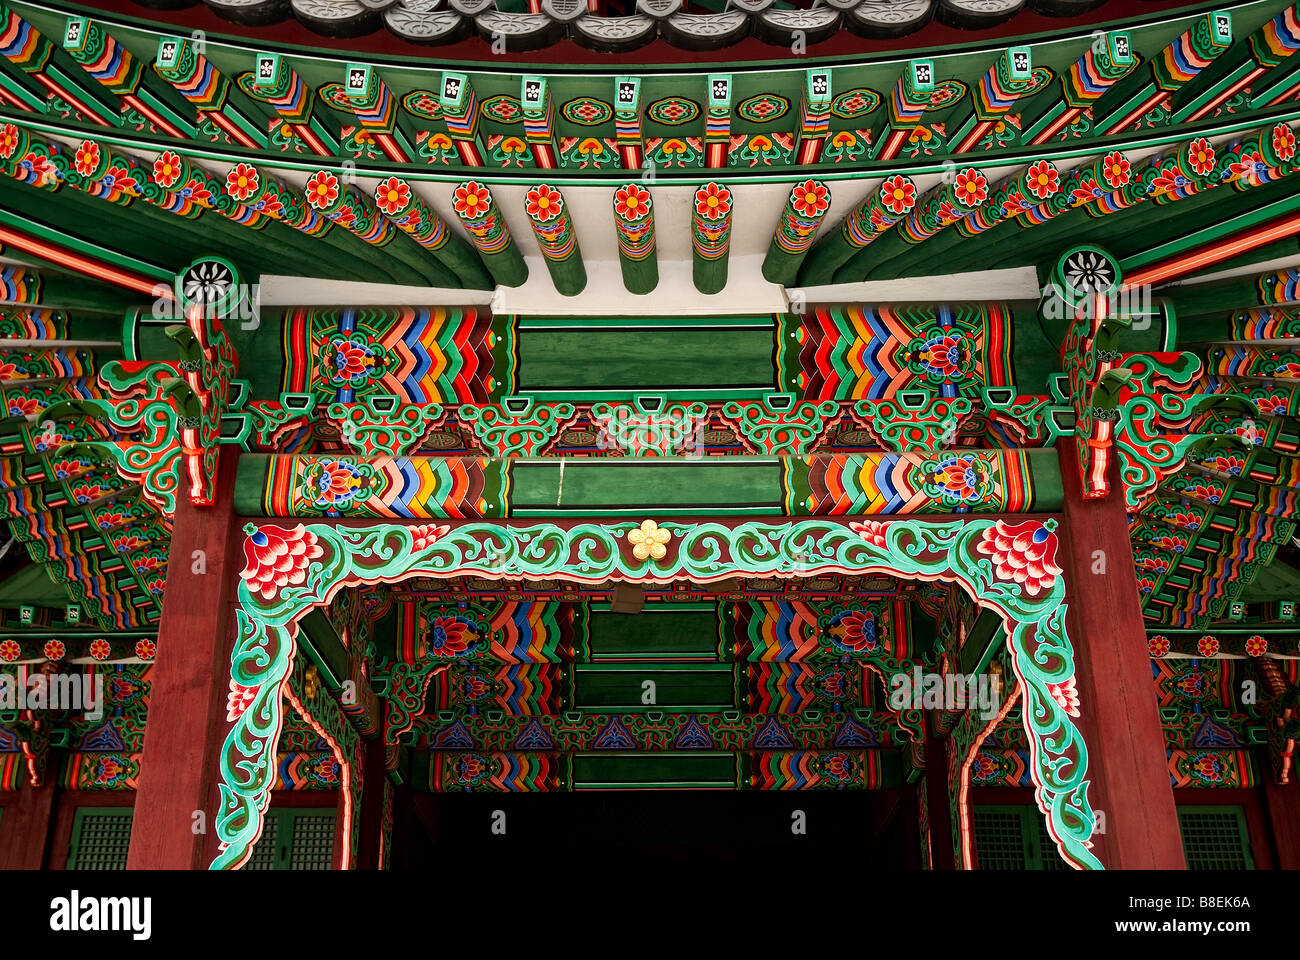 Tempio pittura dettaglio seoul corea del sud asia Foto Stock